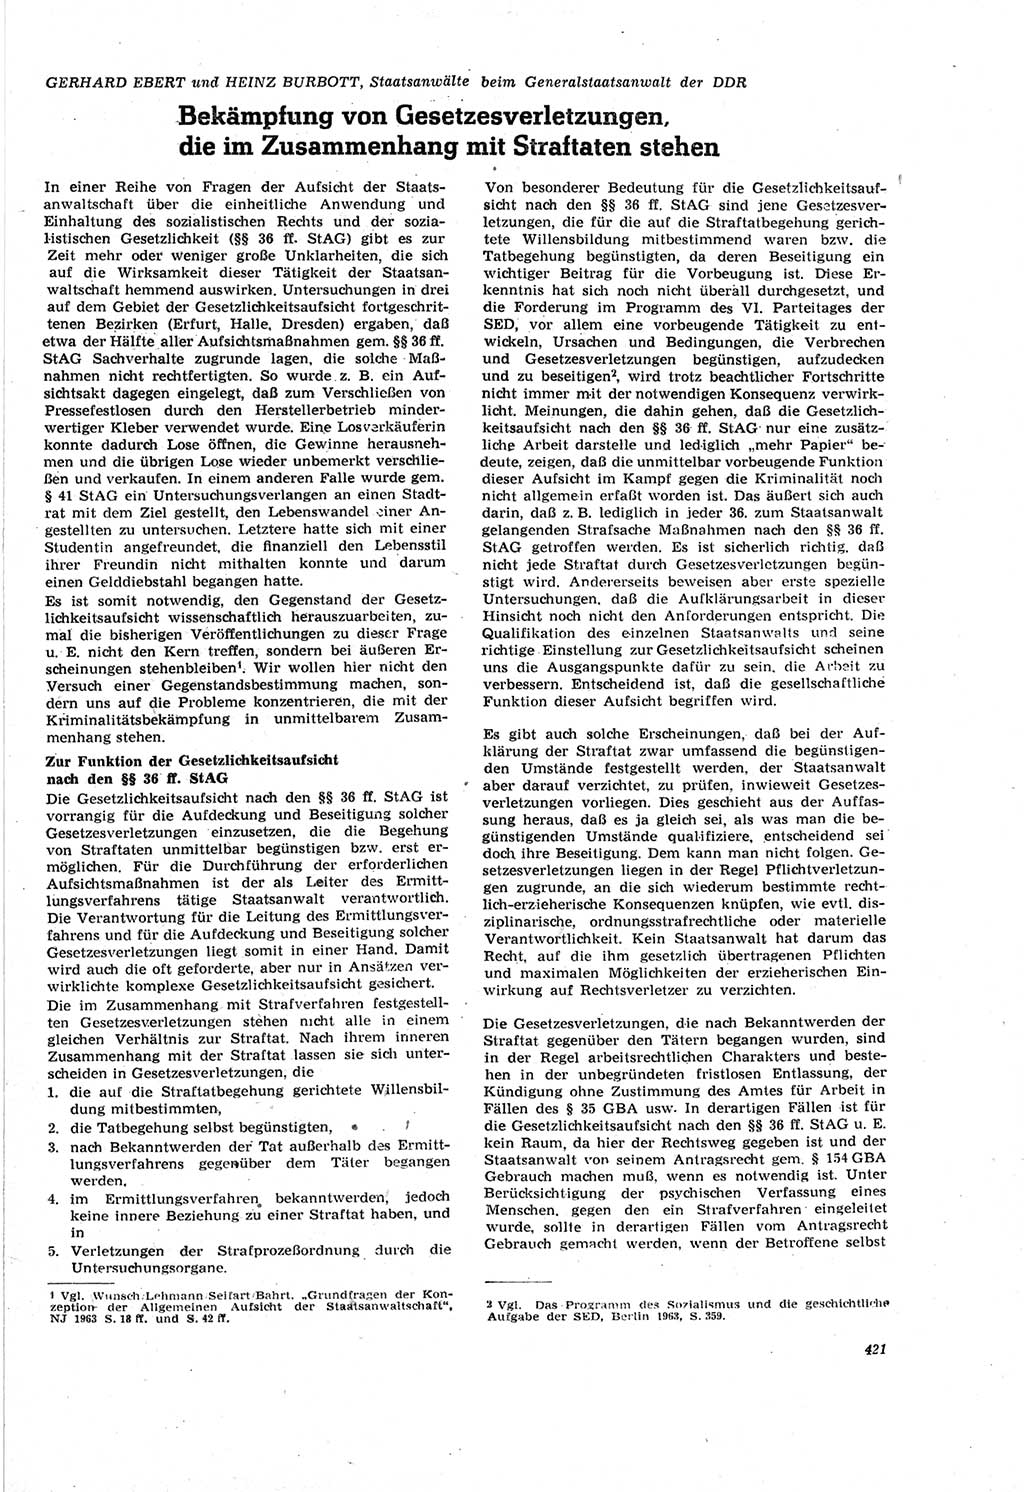 Neue Justiz (NJ), Zeitschrift für Recht und Rechtswissenschaft [Deutsche Demokratische Republik (DDR)], 18. Jahrgang 1964, Seite 421 (NJ DDR 1964, S. 421)